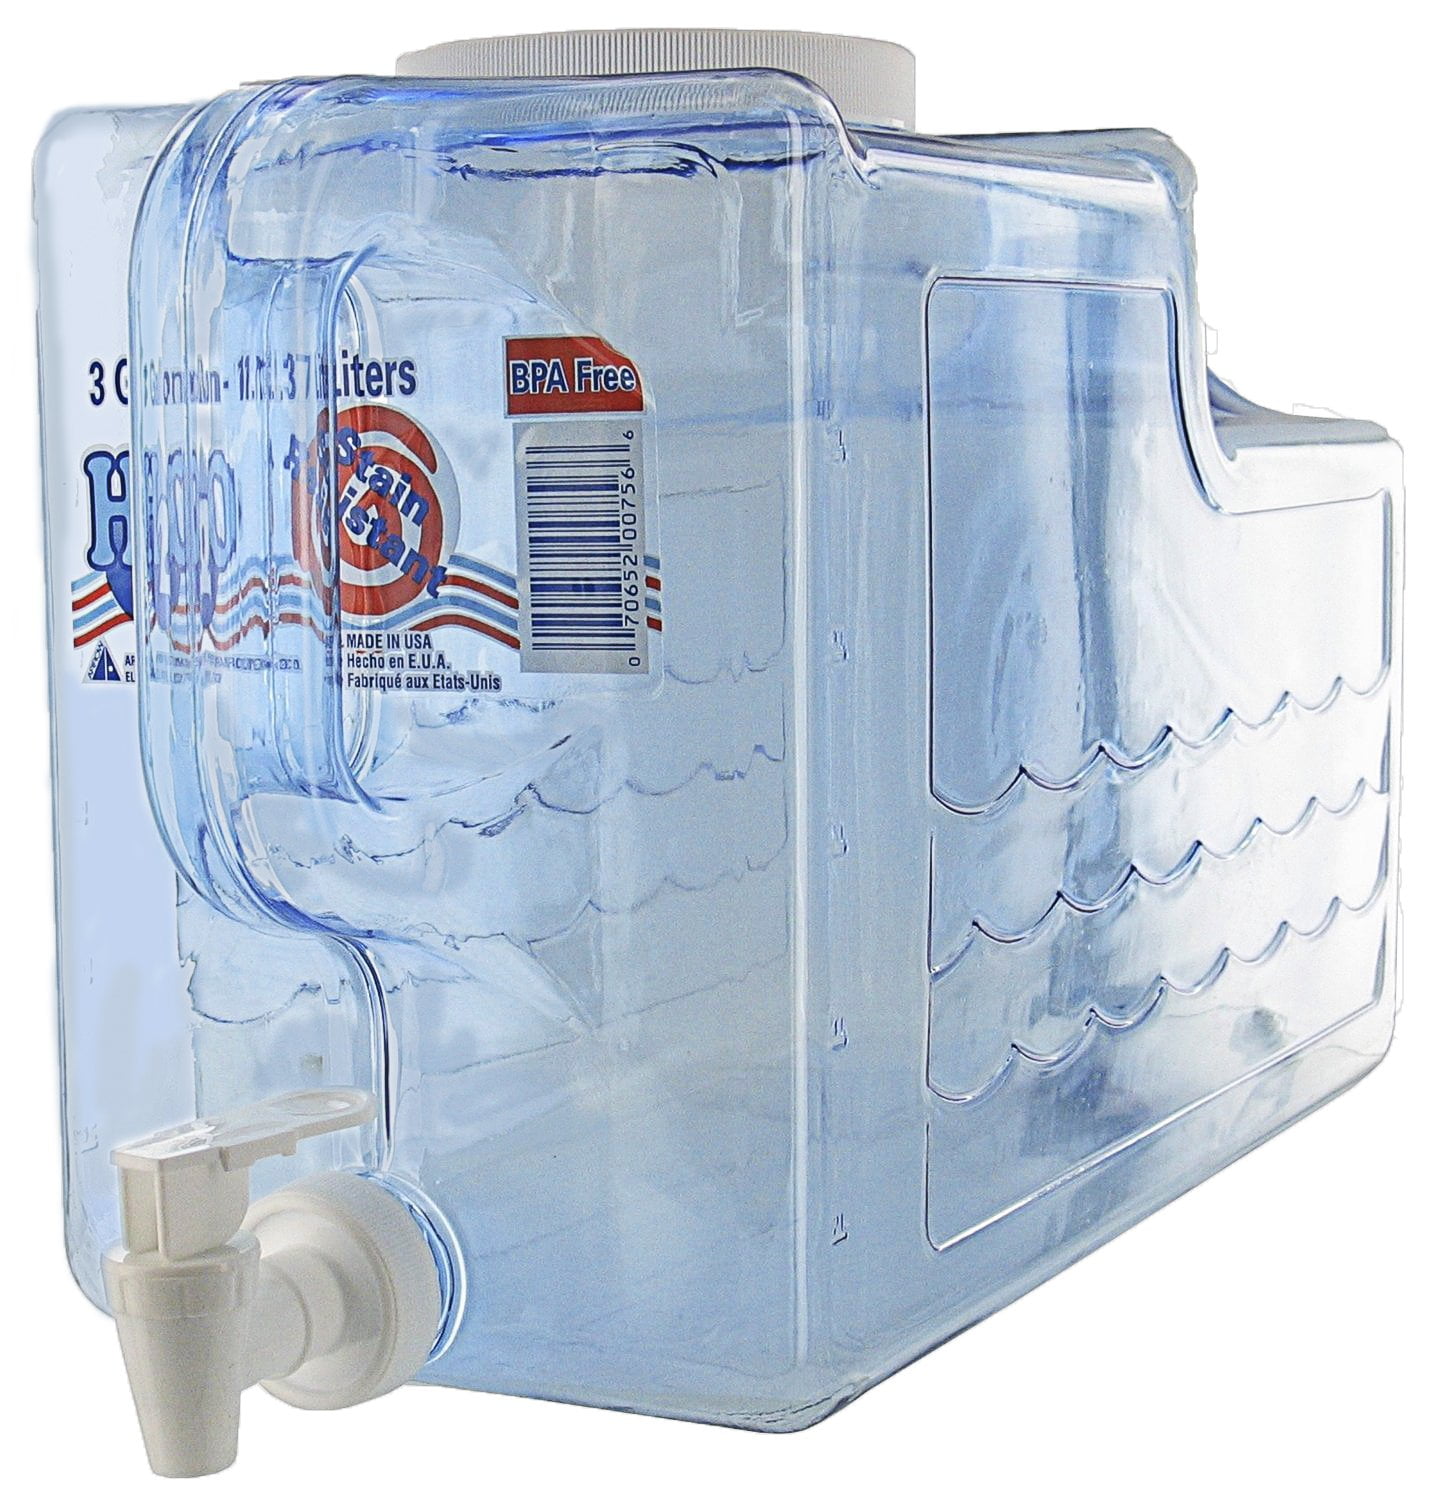 BEV Tek 3 Gallon Drink Dispenser, 1 Dishwashable Beverage Dispenser - Detachable Tank, Includes Decals, Black Plastic Carnival Juice Dispenser, with S